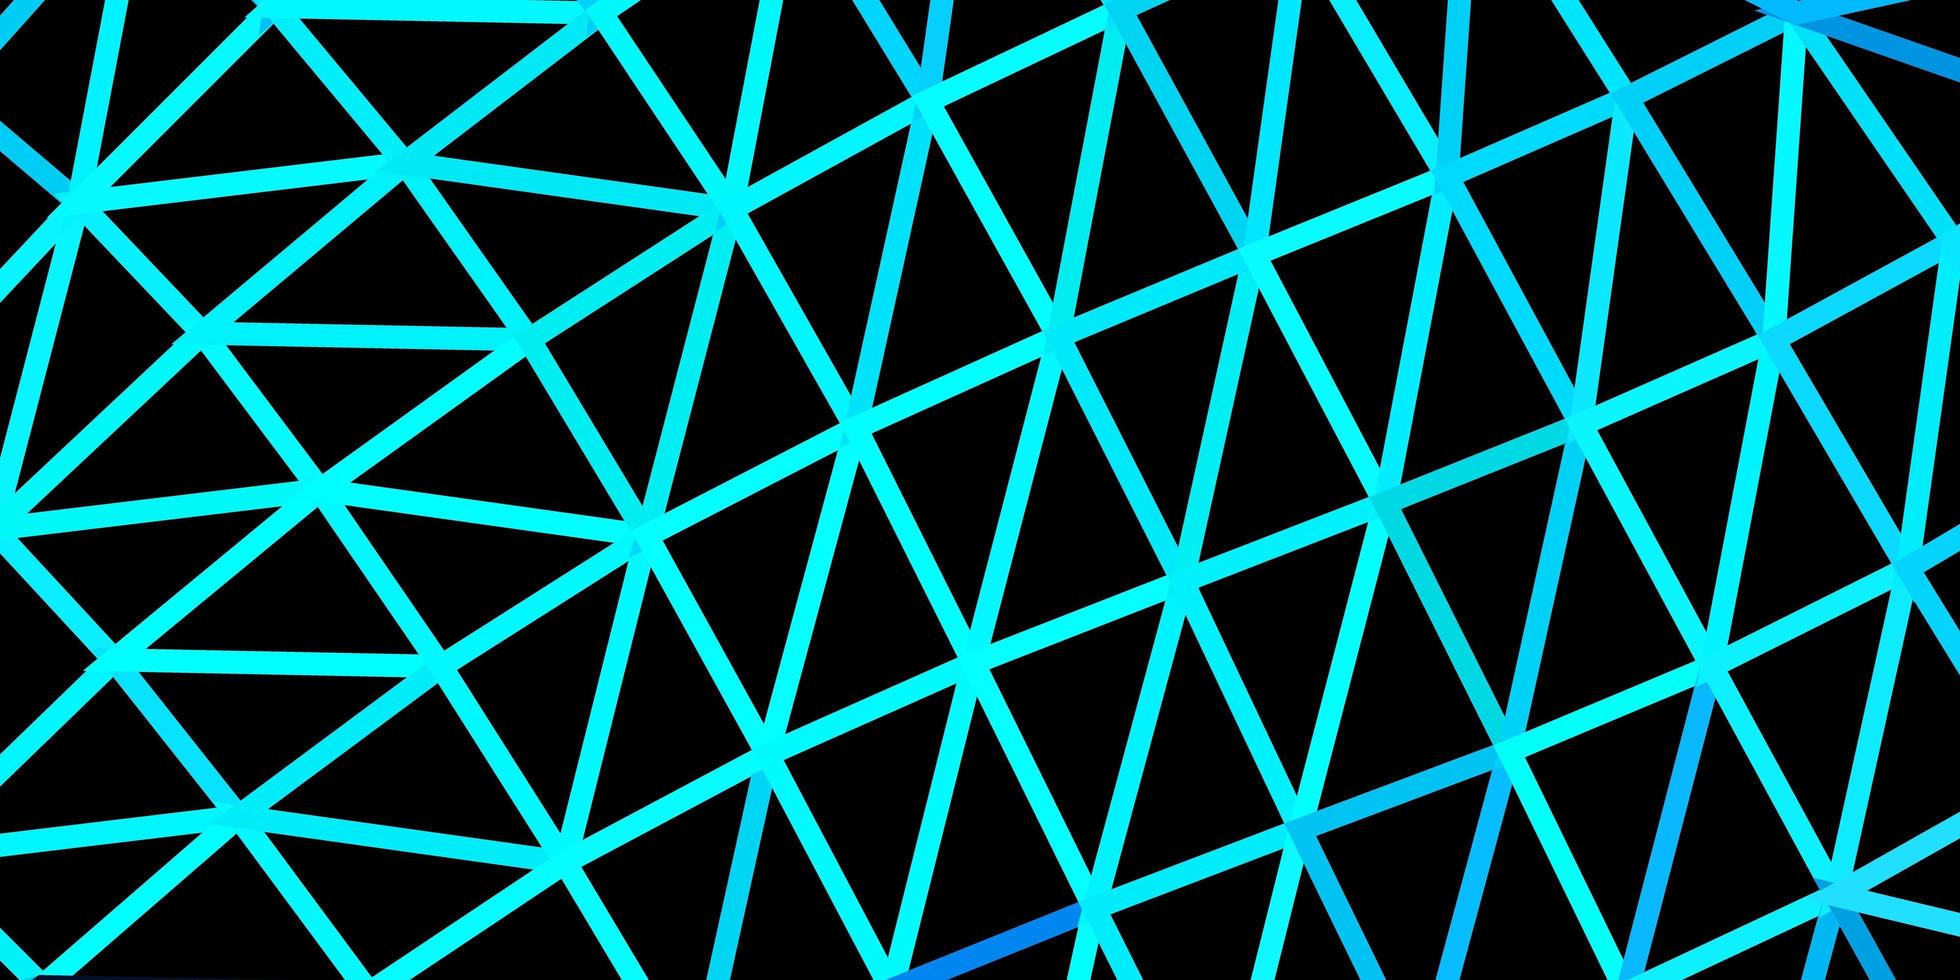 hellblaue Vektor abstrakte Dreiecksschablone.